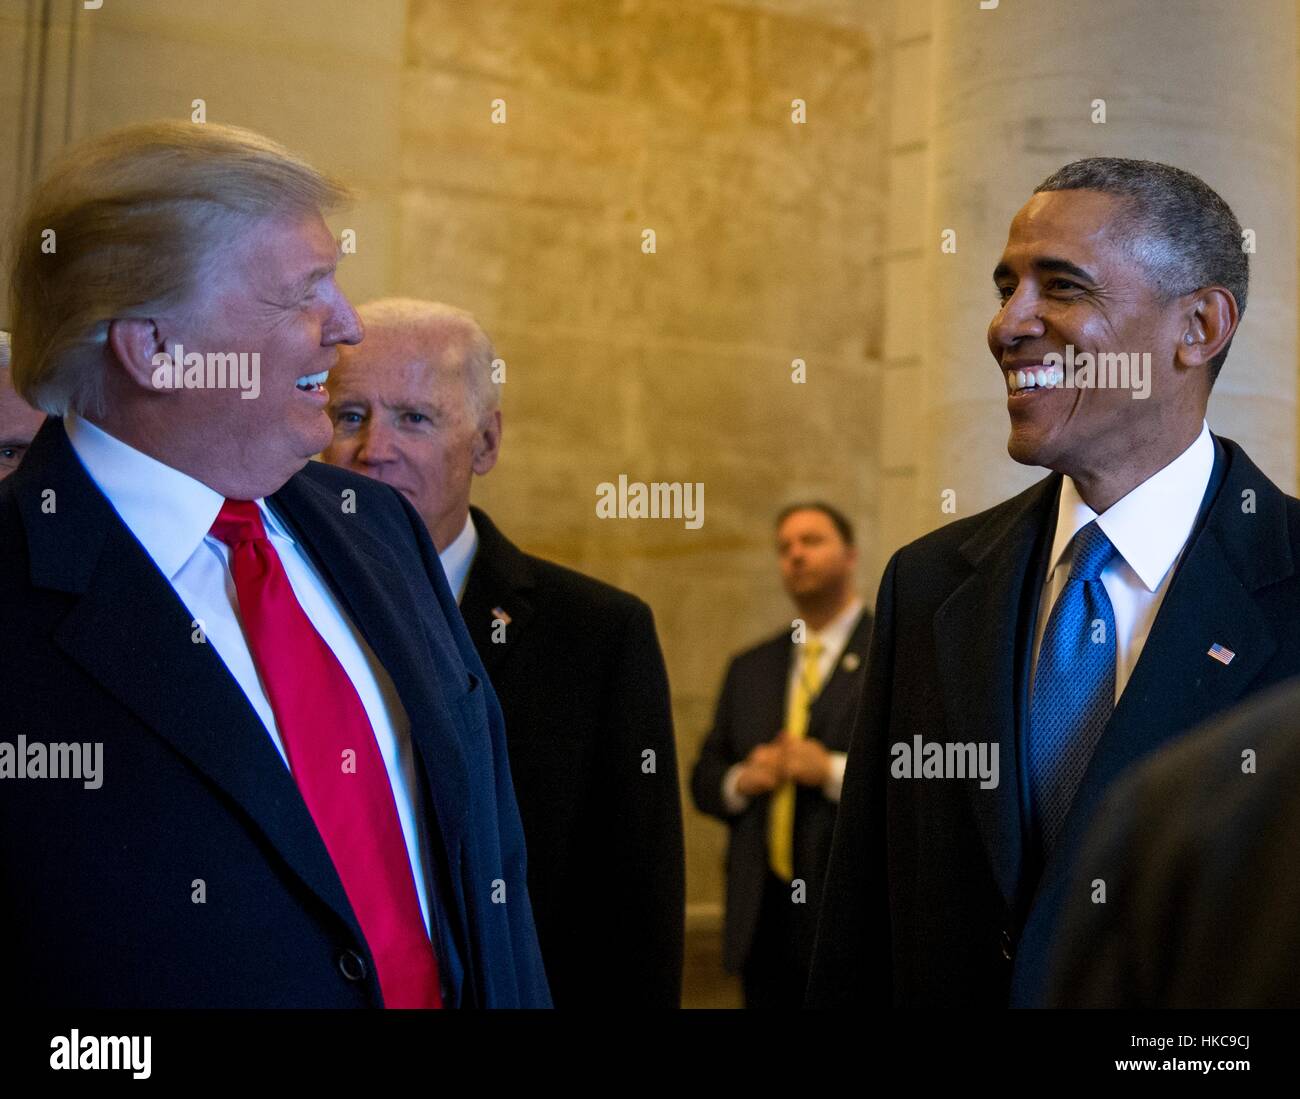 US-Präsident Donald Trump und ehemaliger Präsident Barack Obama fahren Sie in Richtung Osten Schritte auf dem US-Kapitol für die Abschiedszeremonie während der 58. Presidential Inauguration 20. Januar 2017 in Washington, DC. Stockfoto